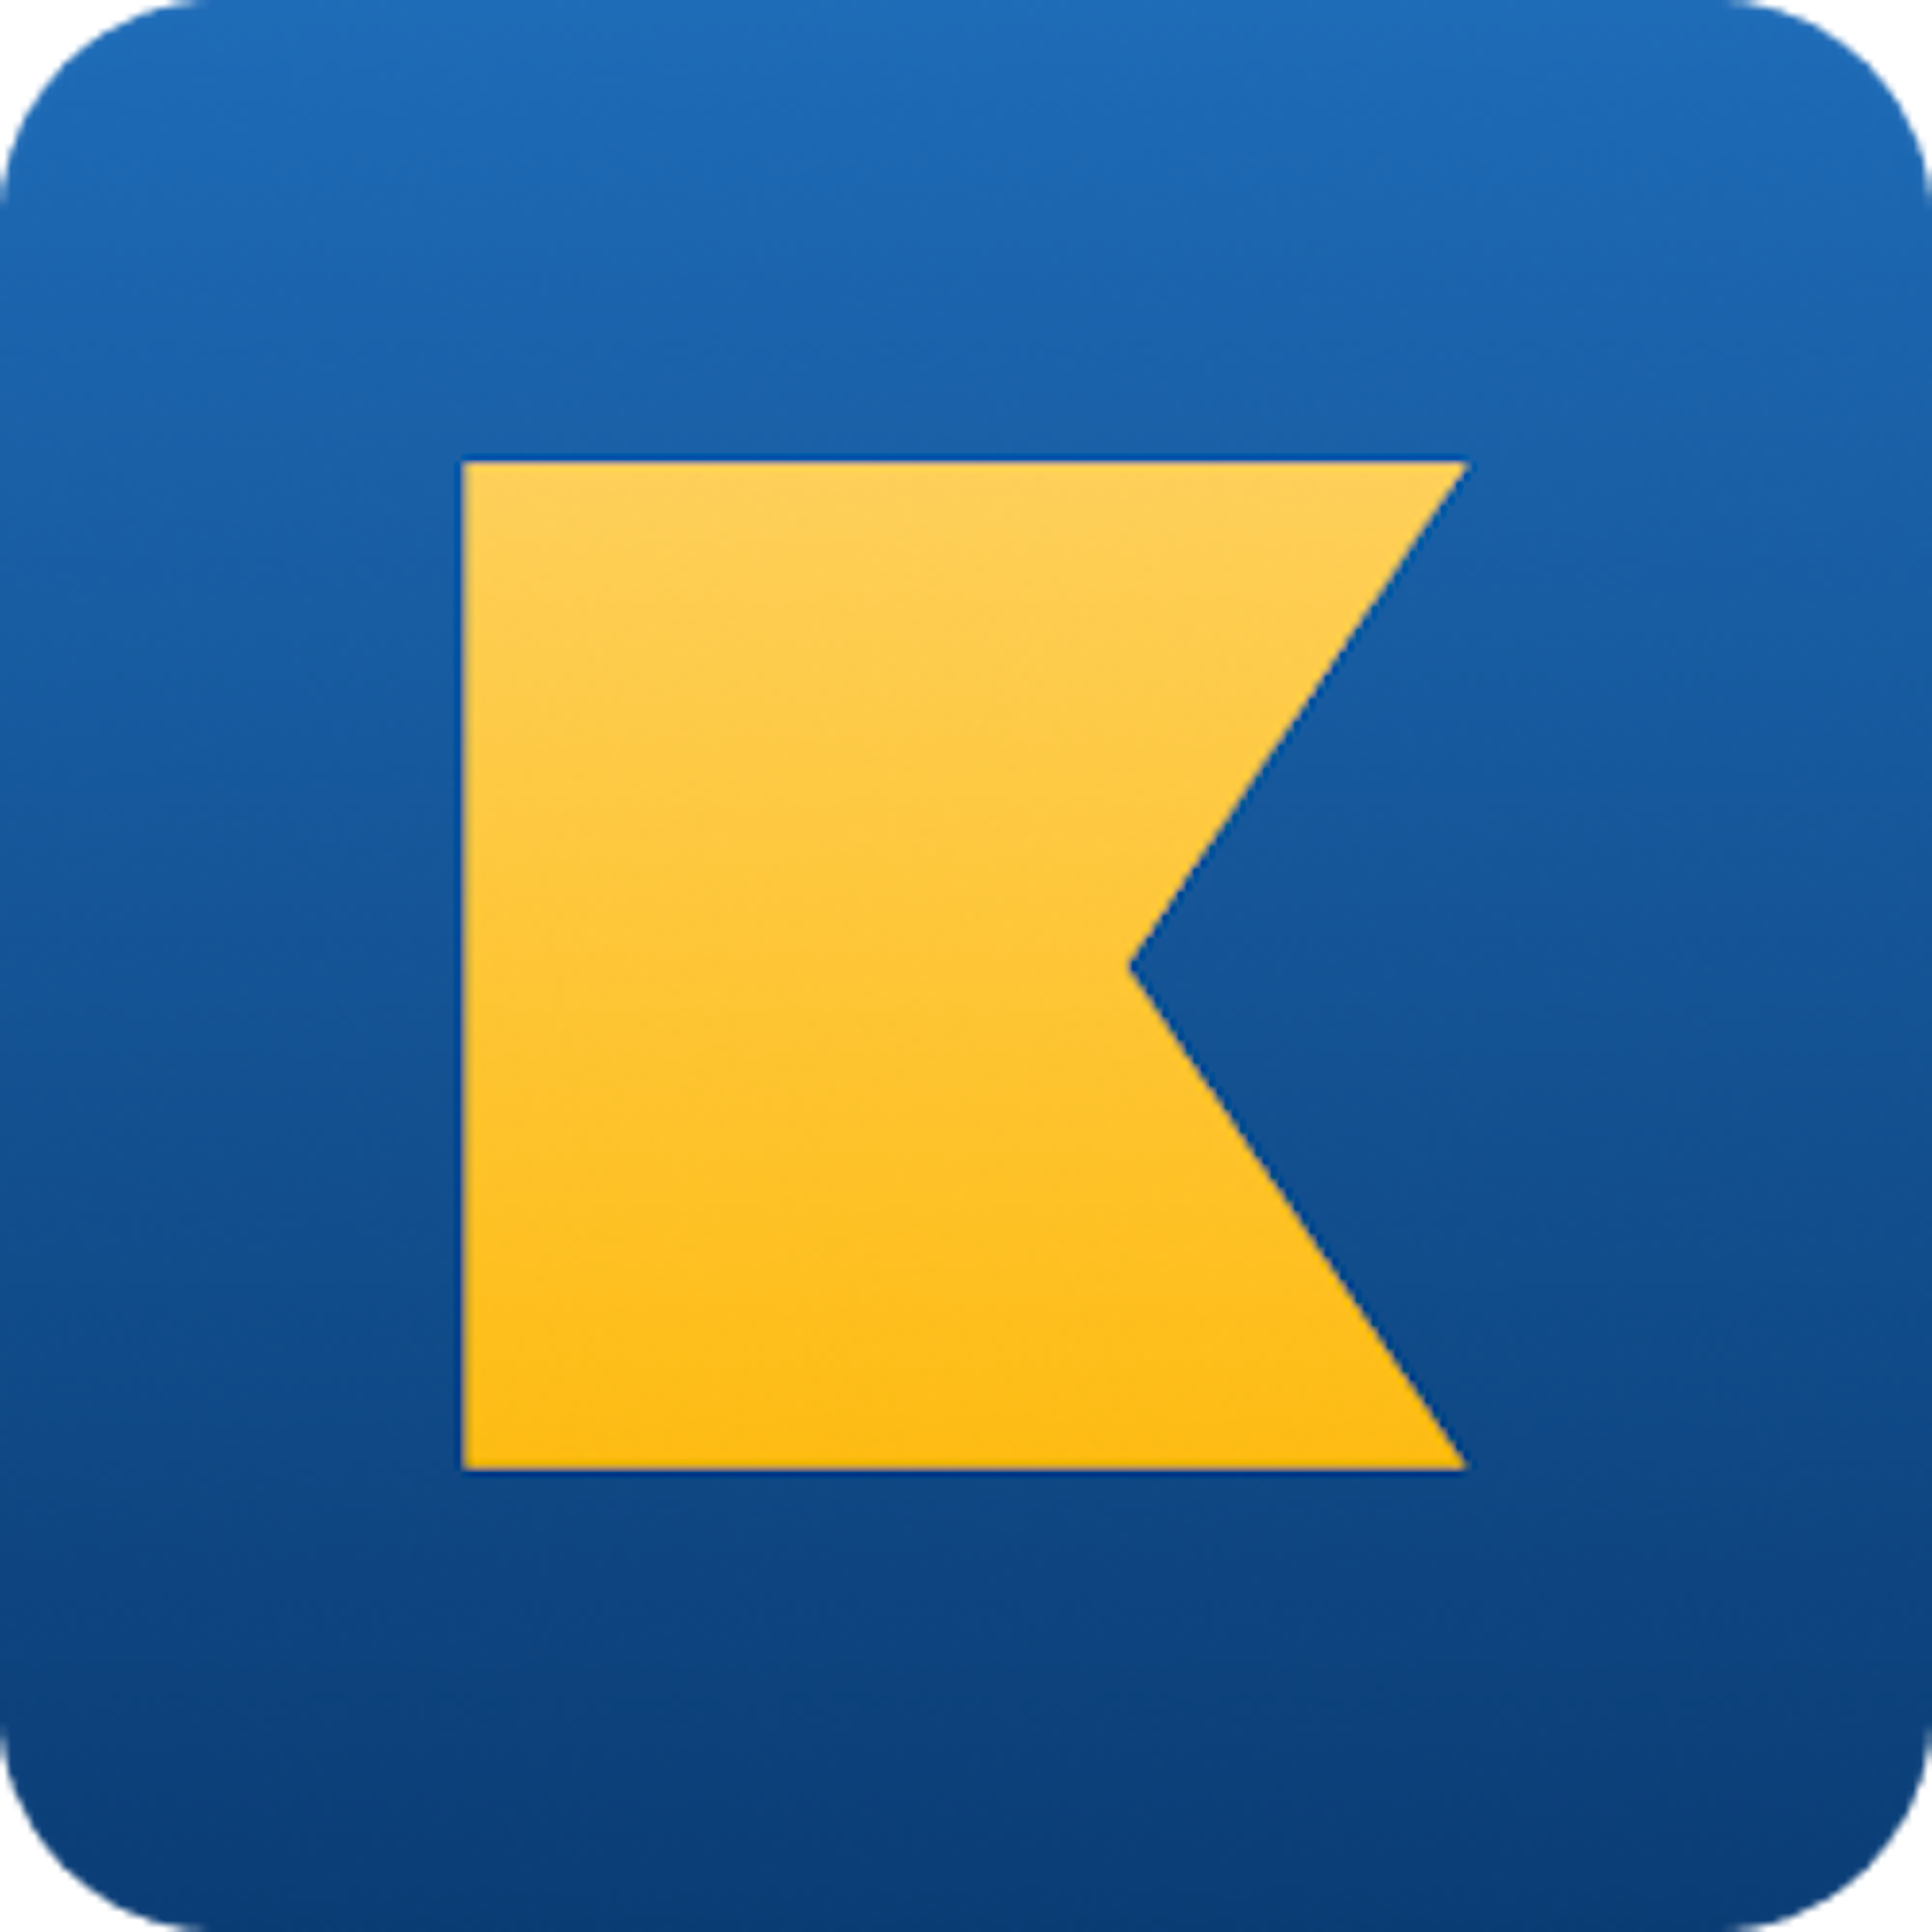 Kashoo Logo